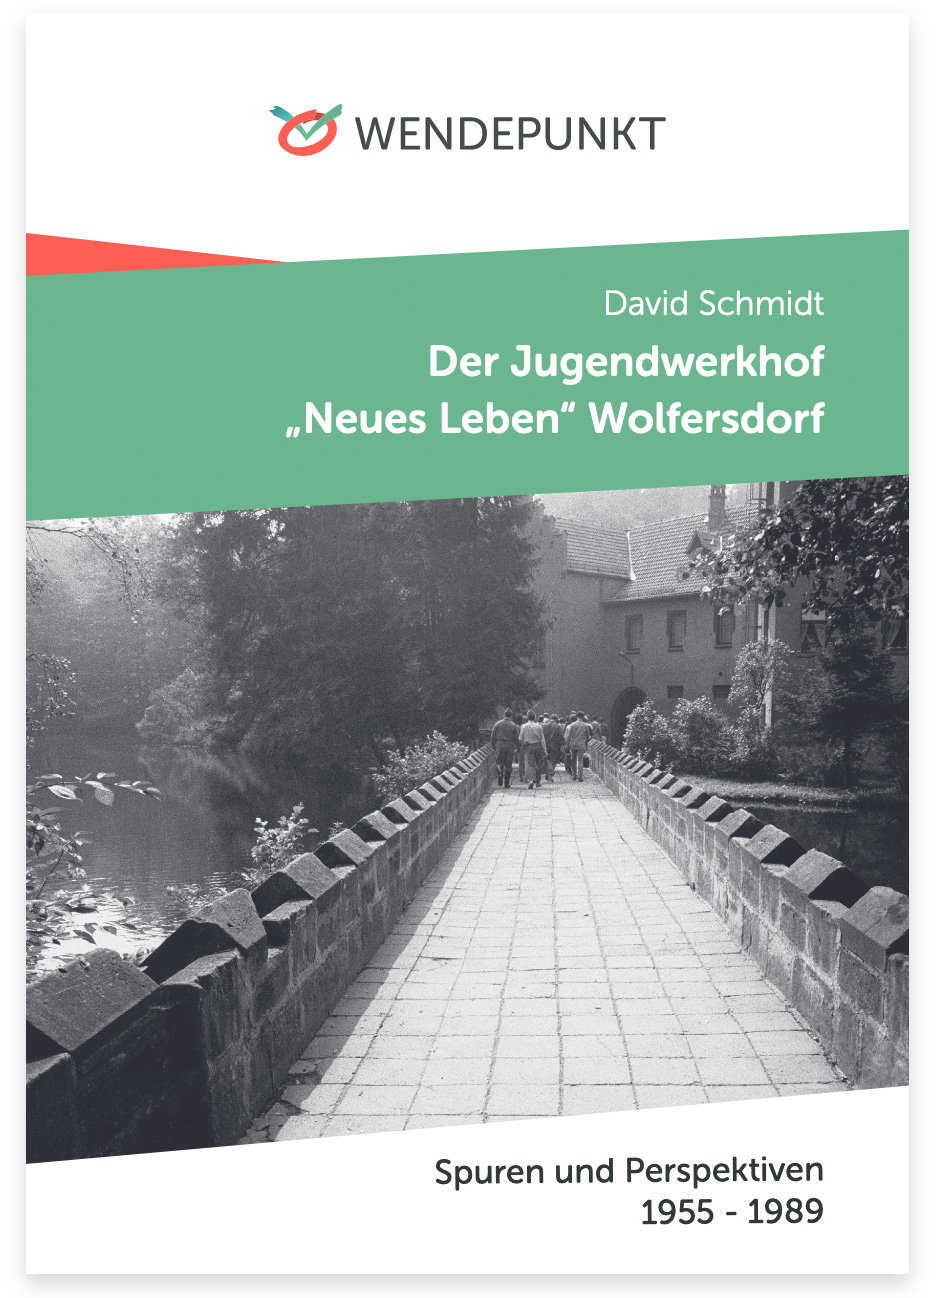 Abbildung Titelseite der Begleitbroschüre zur Ausstellung: Der Jugendwerkhof „Neues Leben“ Wolfersdorf von David Schmidt